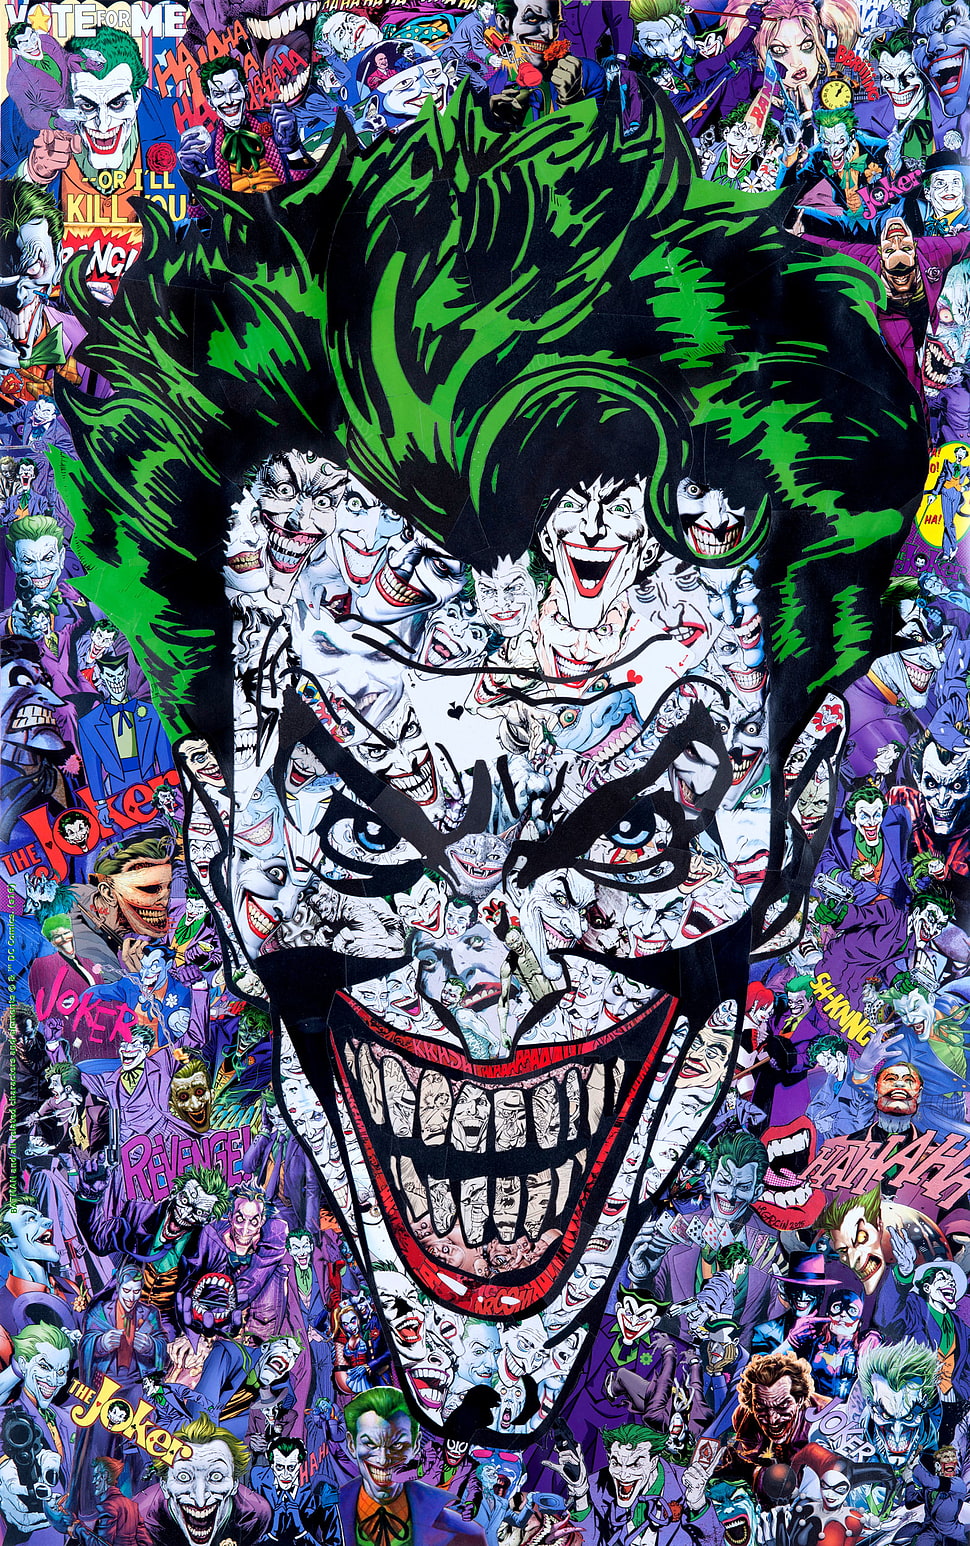 Joker face illustration, comic books, Joker HD wallpaper